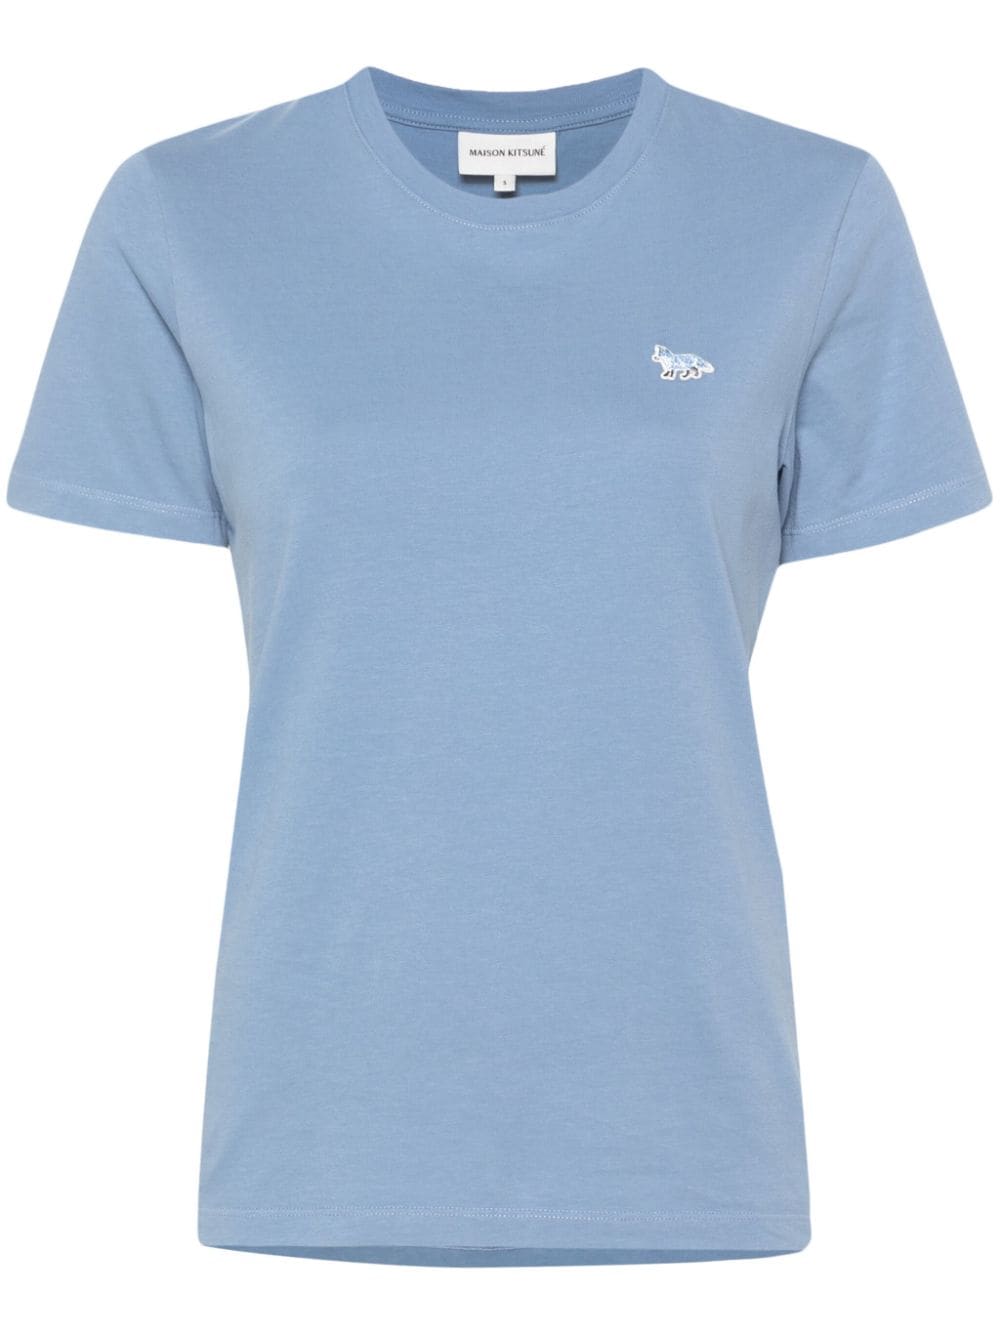 Maison Kitsuné Baby Fox T-Shirt - Blau